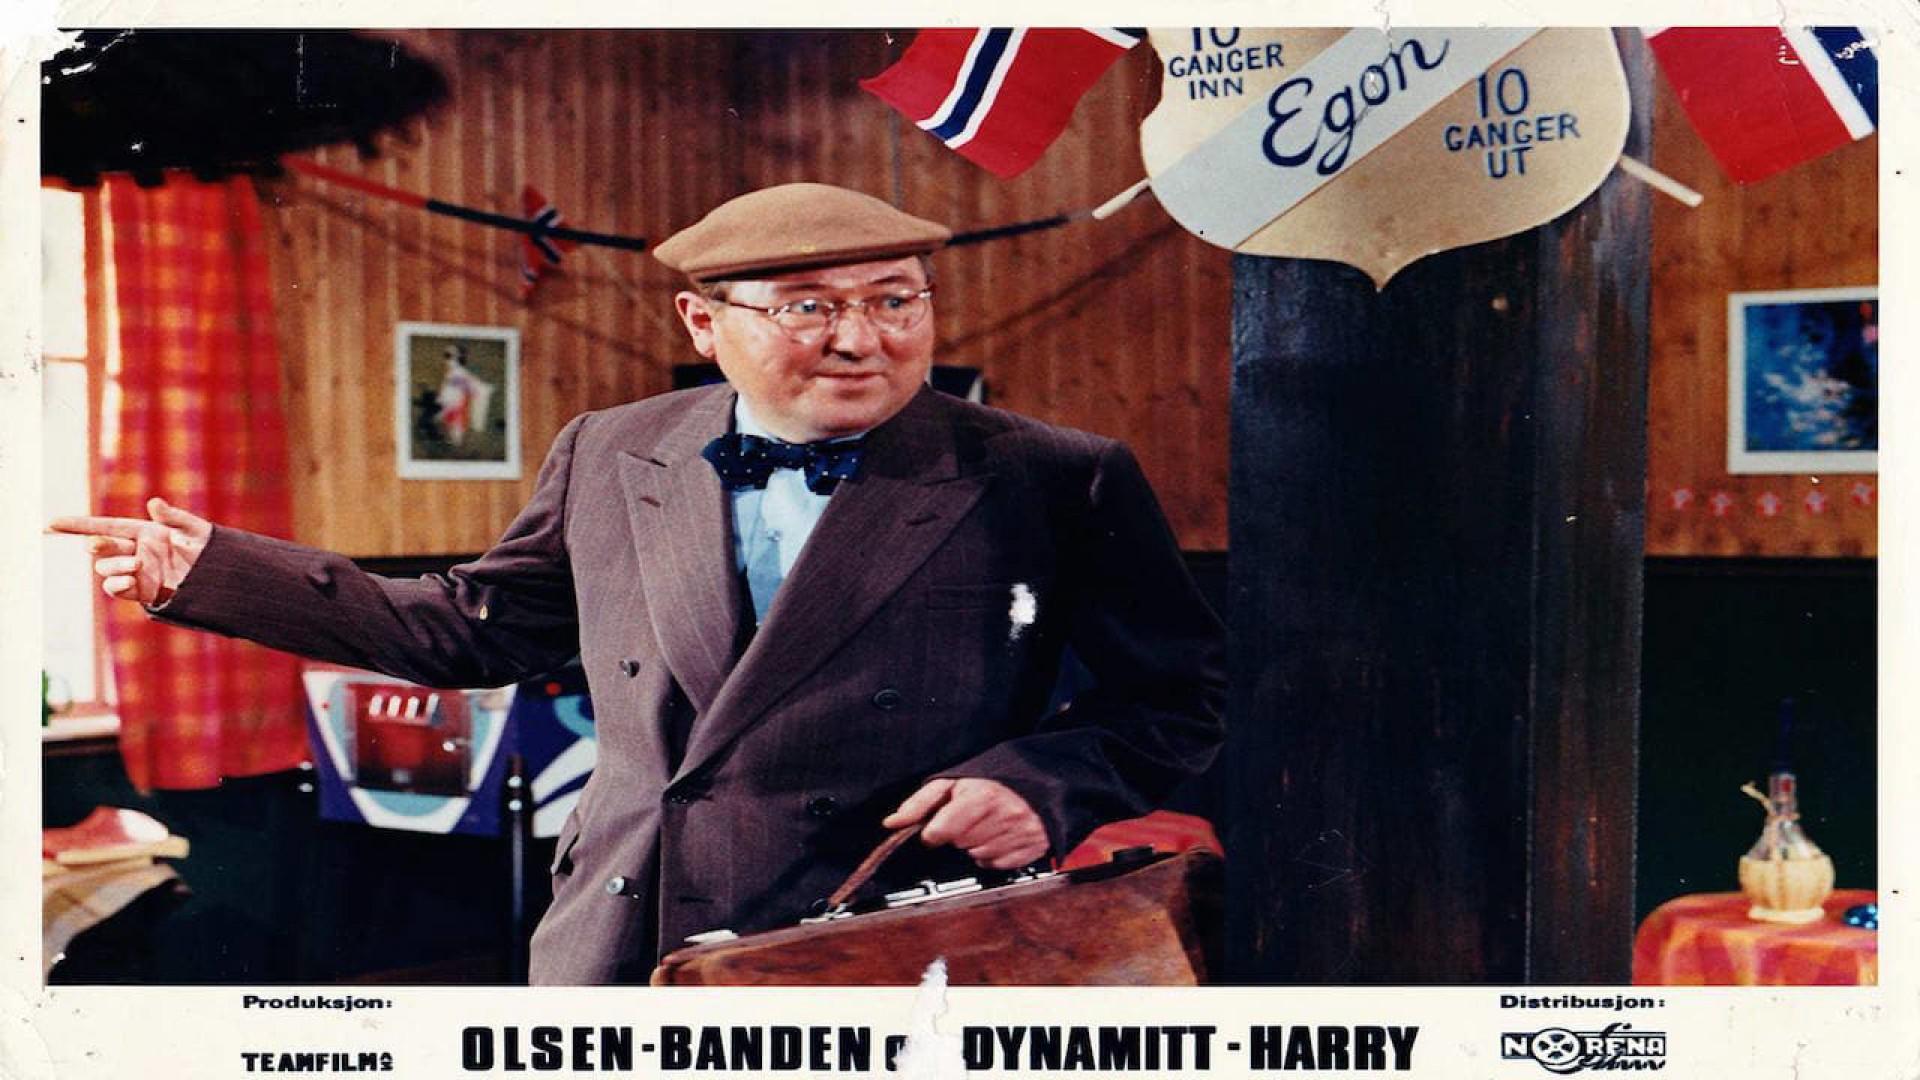 Olsenbanden og Dynamitt-Harry